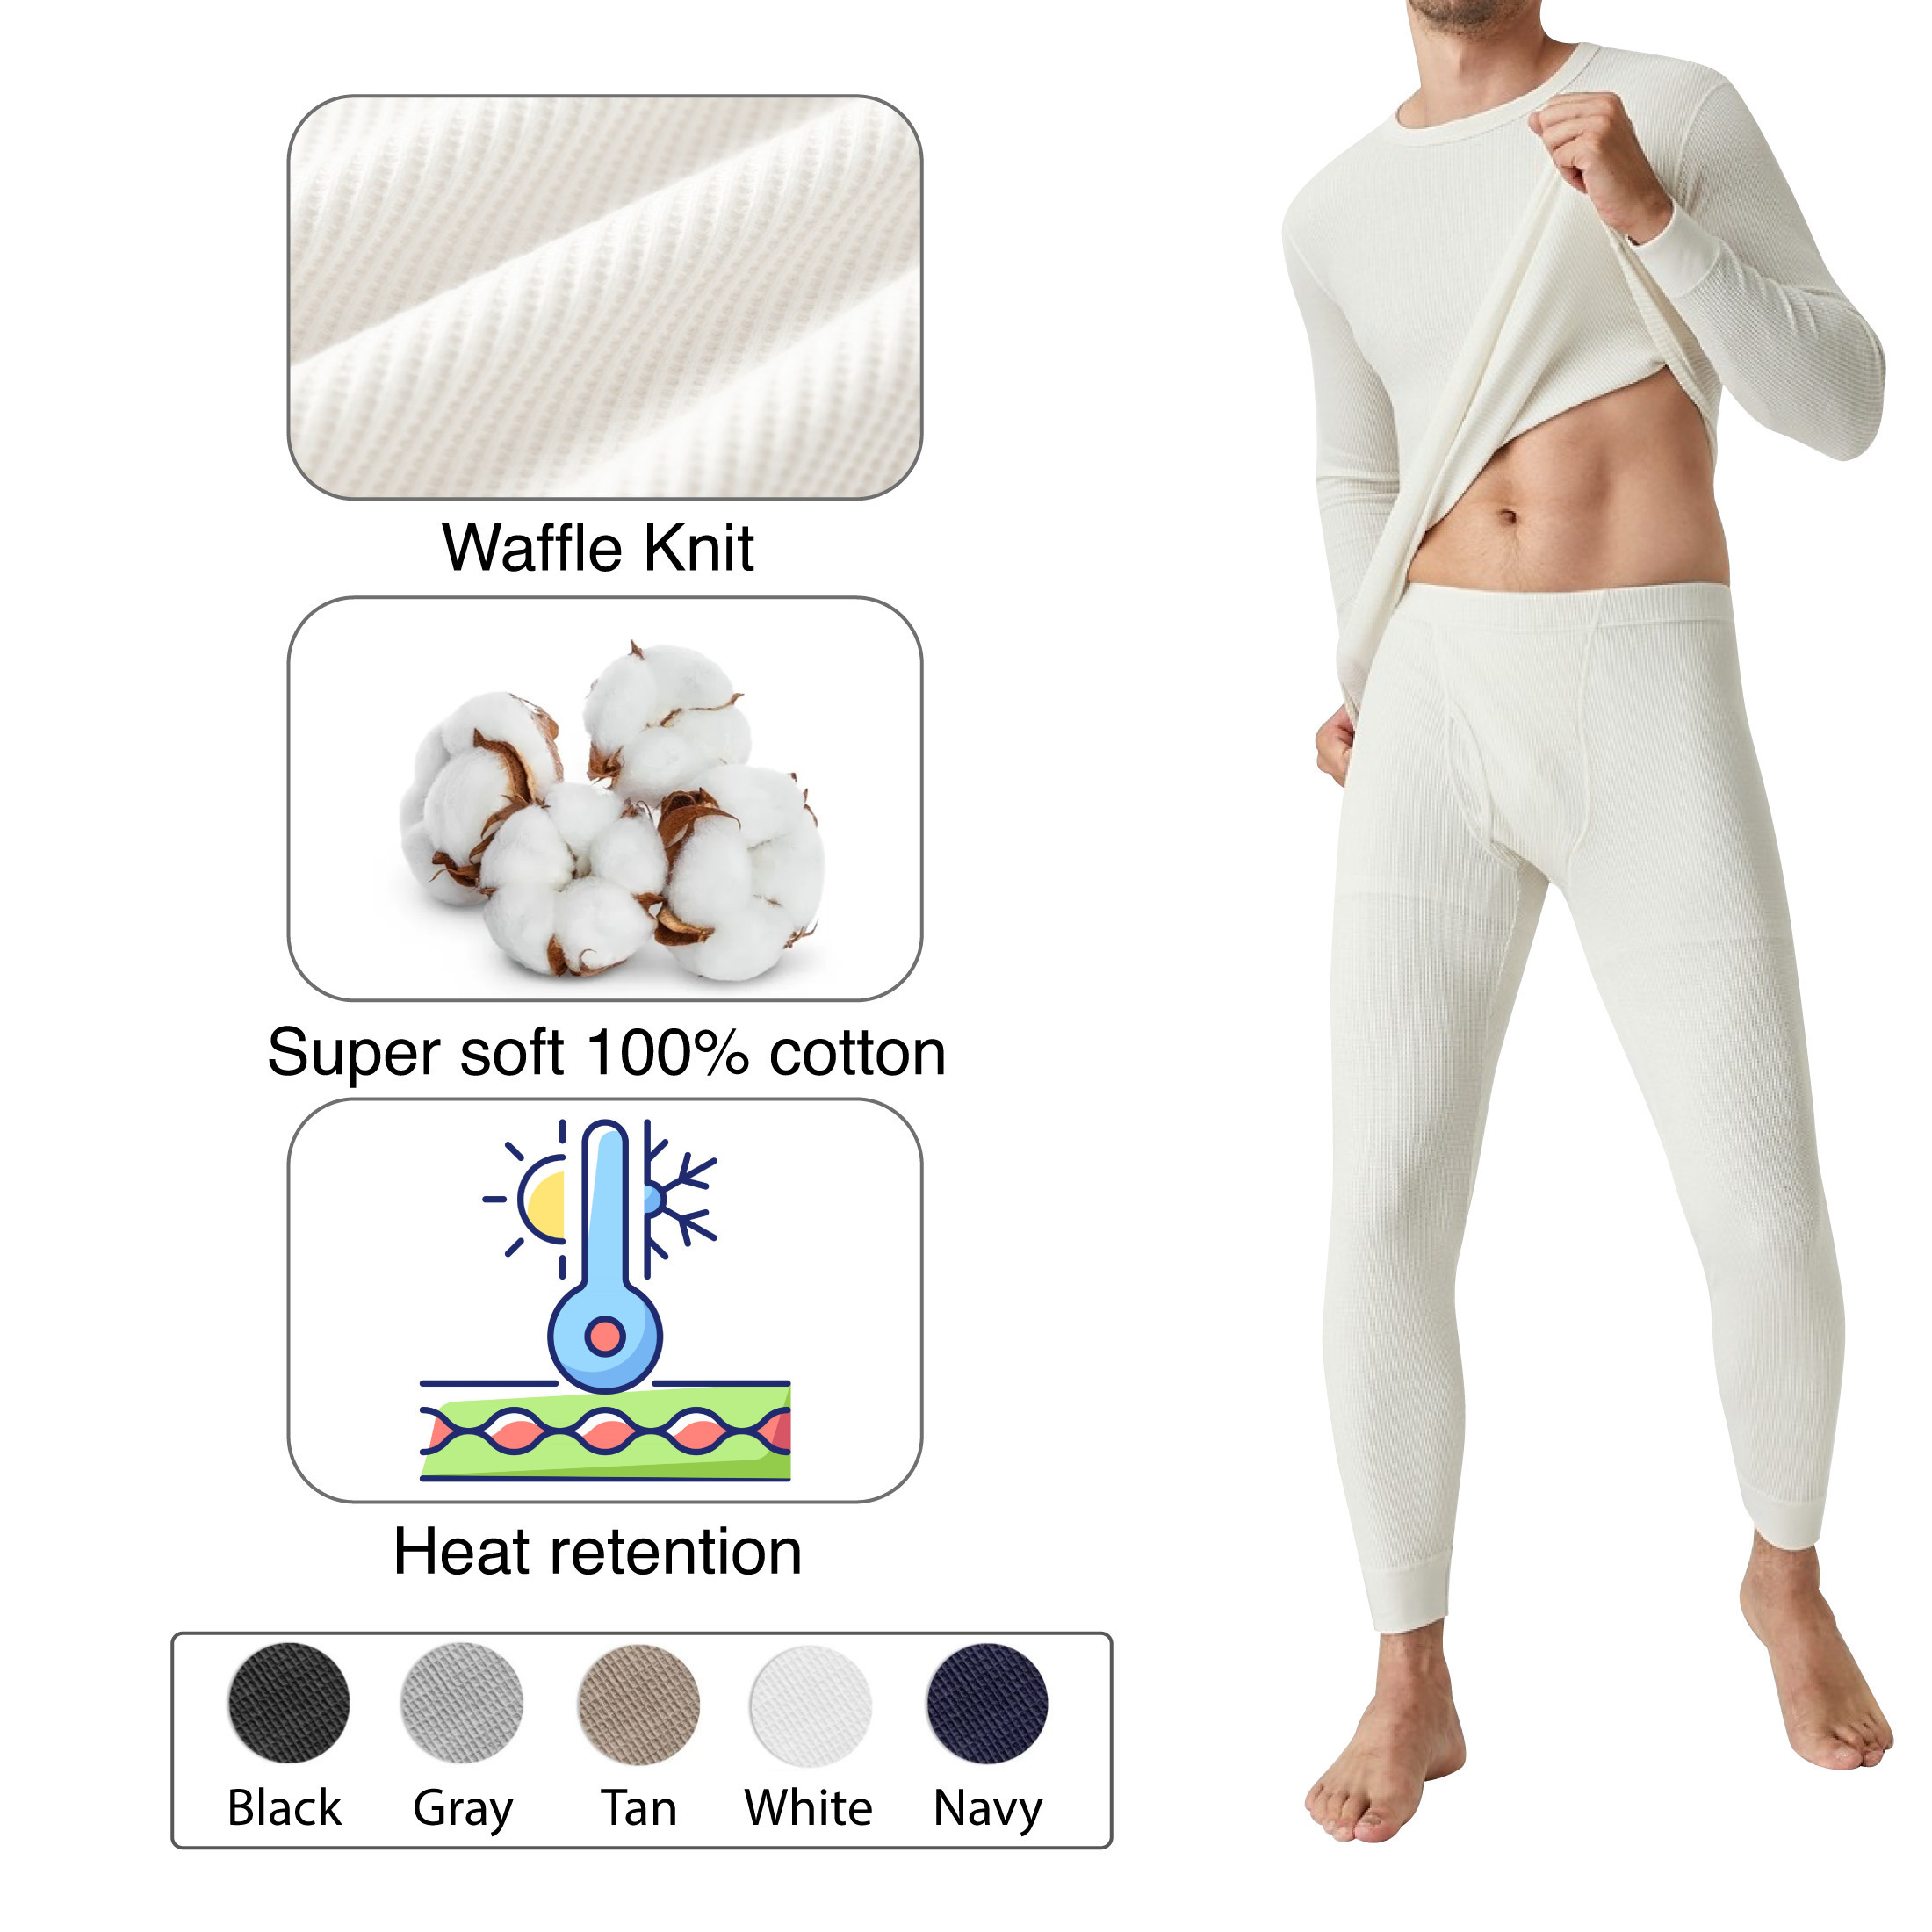 2-Piece: Men's Super Soft Cotton Waffle Knit Winter Thermal Underwear Set - Grey, Medium